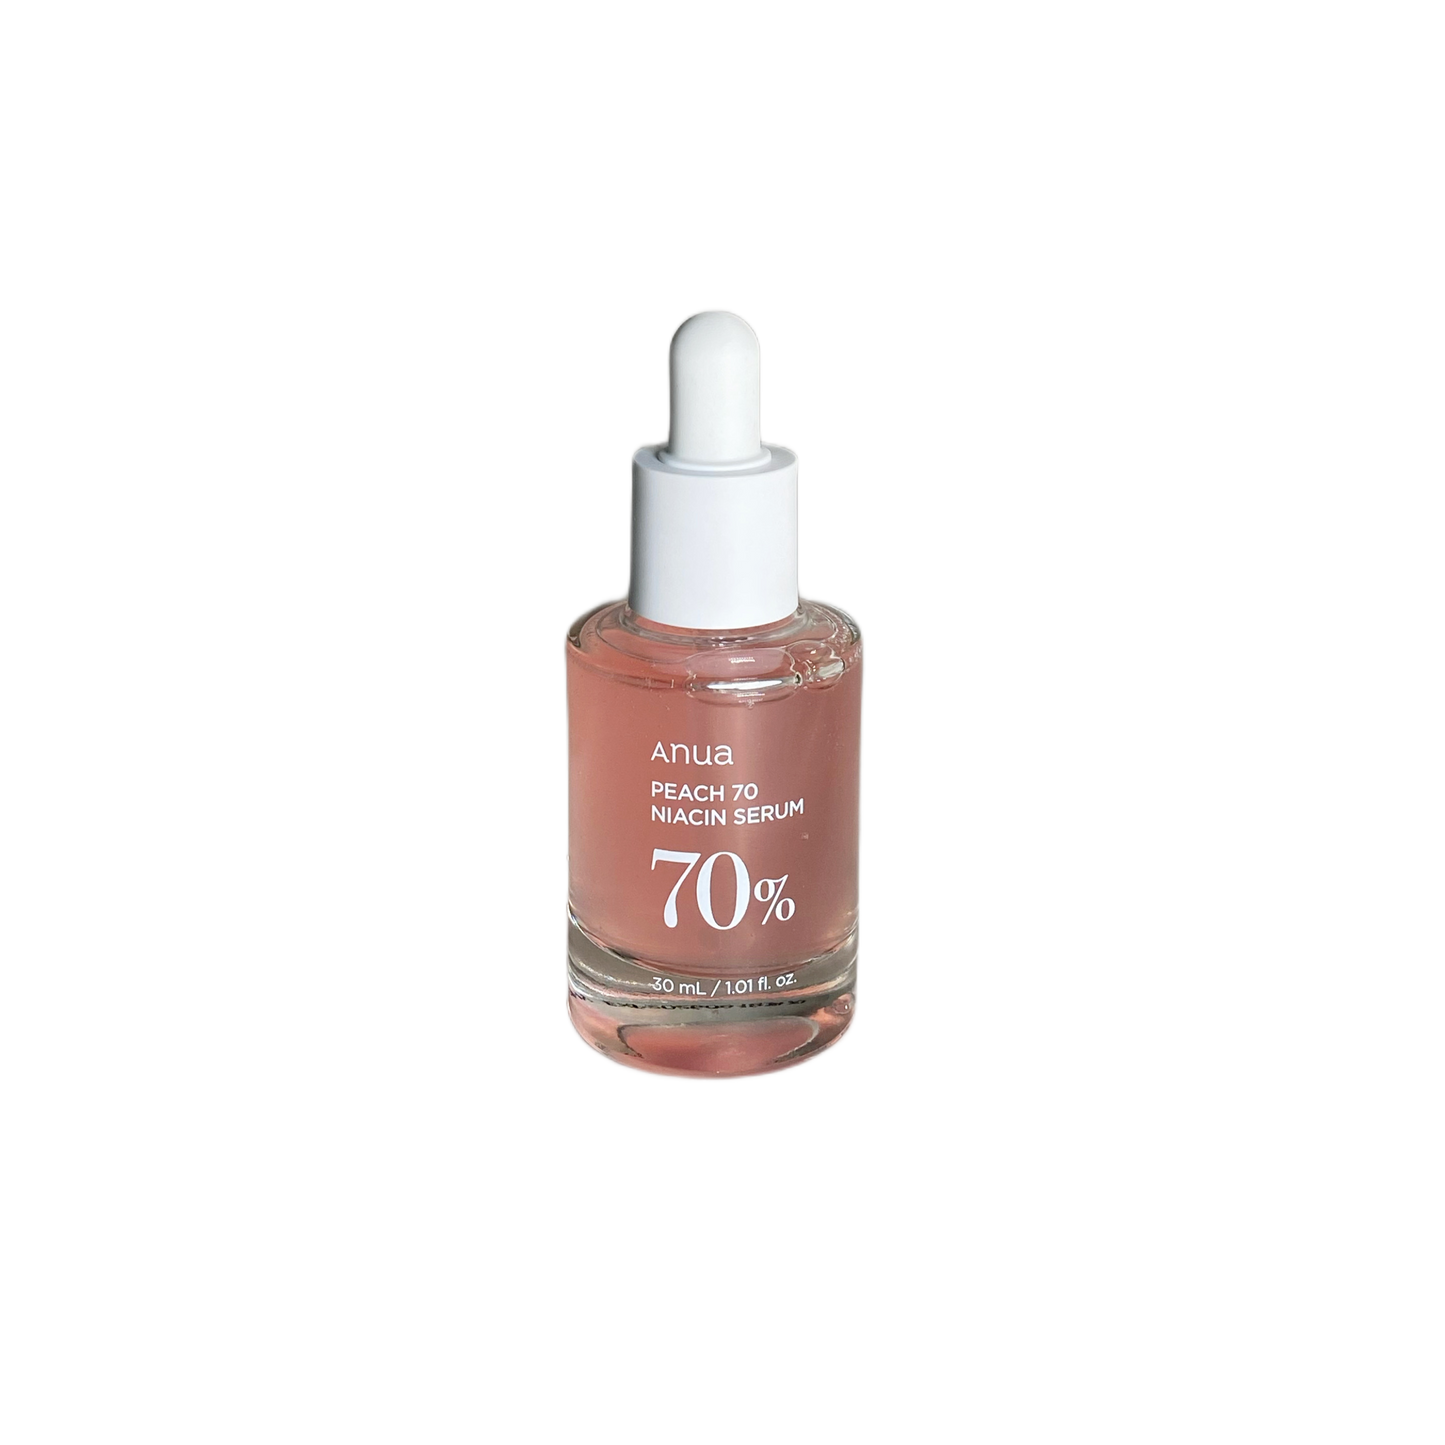 Anua - Peach 70% Niacinamide Serum - 30ml